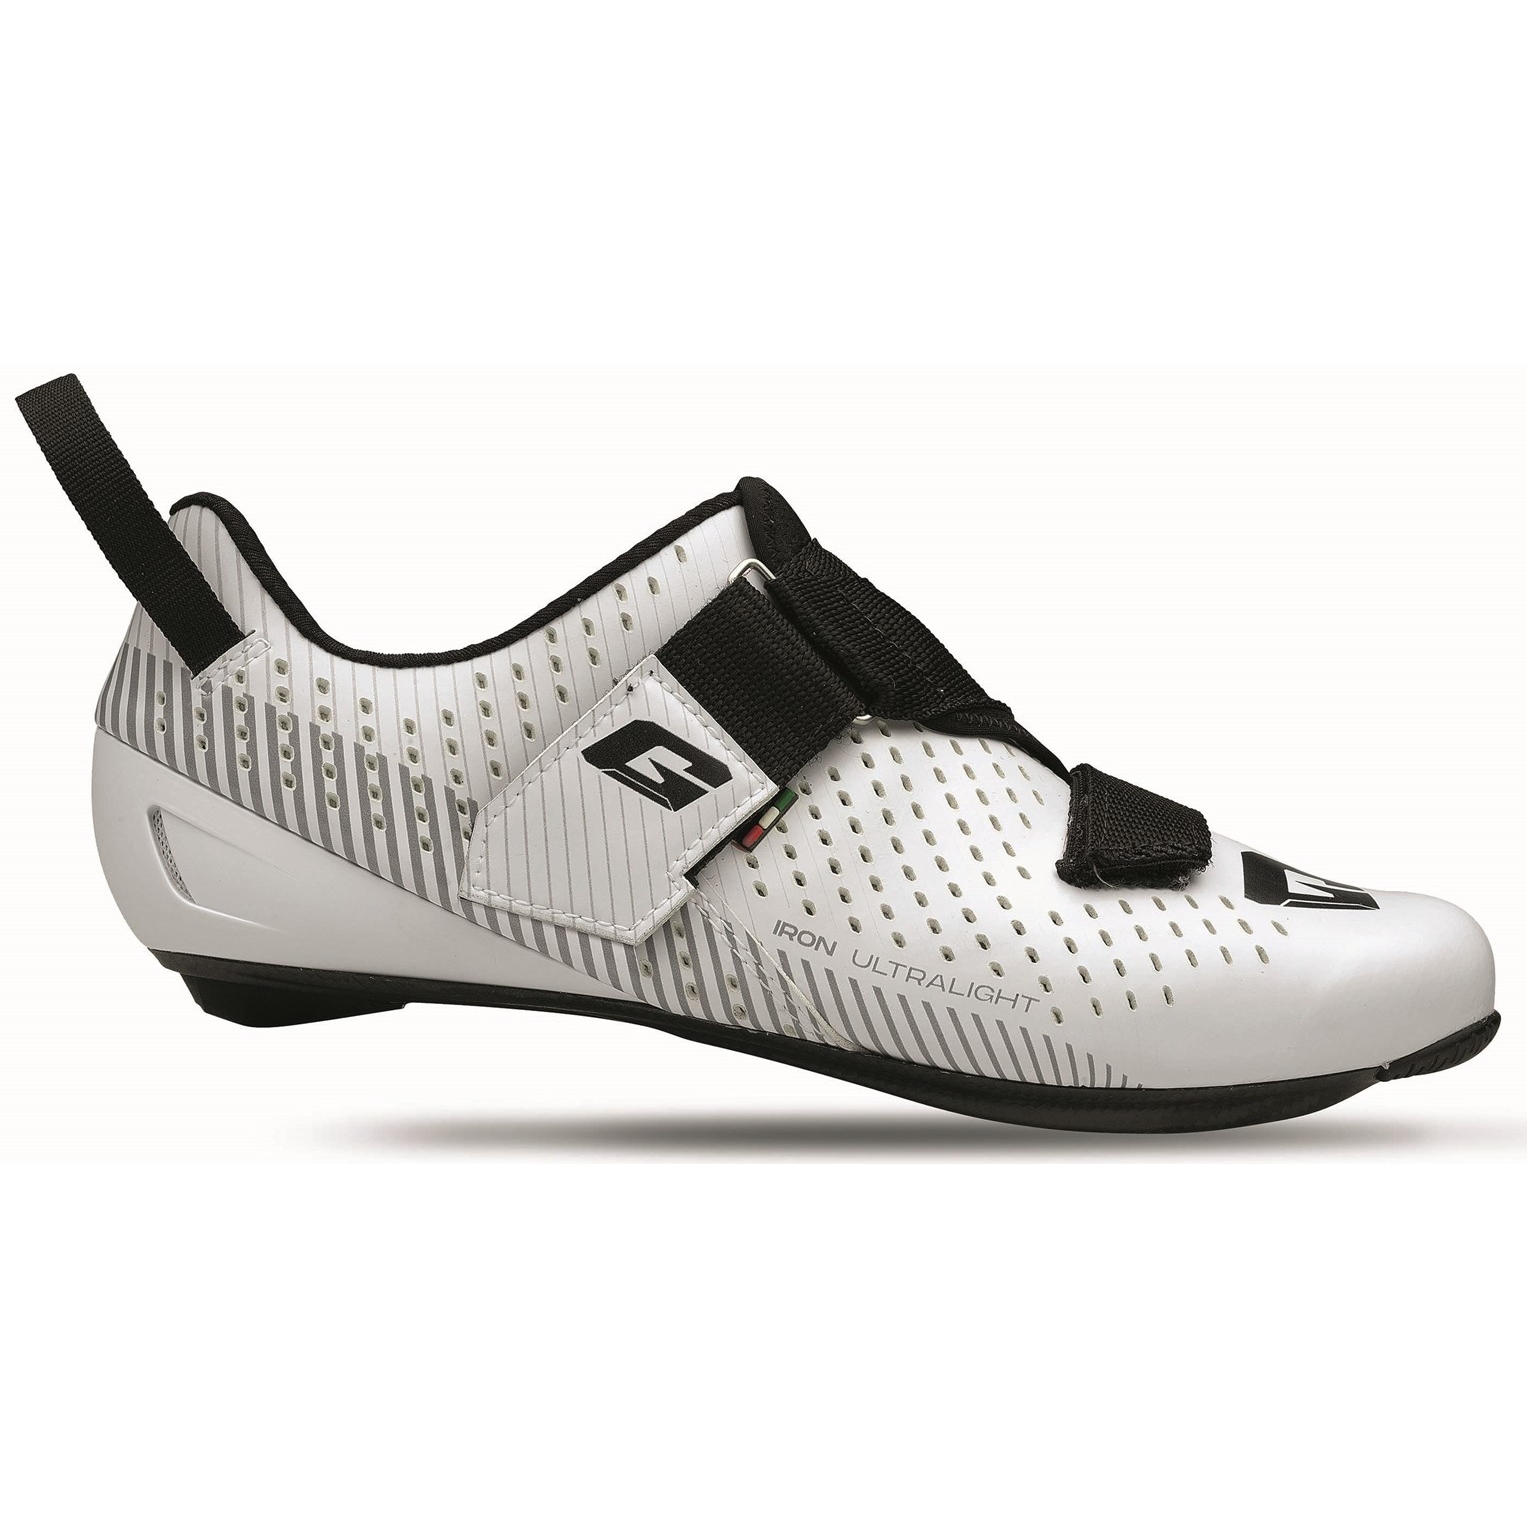 Produktbild von Gaerne G.Iron Triathlon Schuhe - Weiß